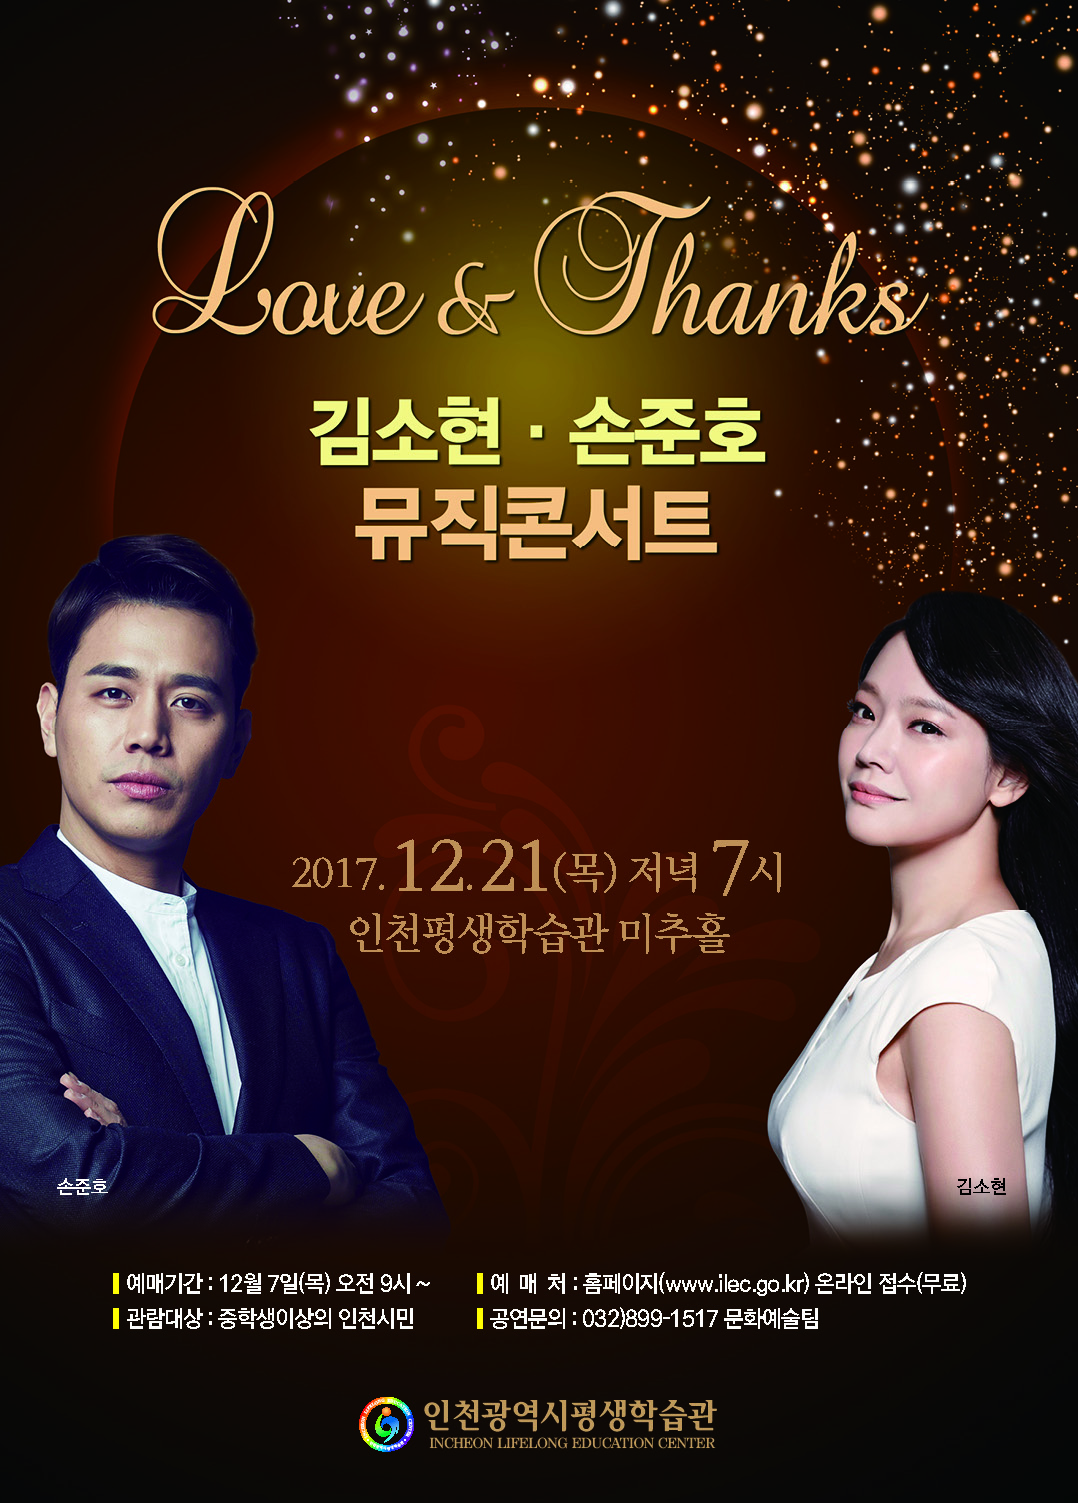 Love & Thanks-김소현 손준호 뮤직콘서트관련 포스터 - 자세한 내용은 본문참조